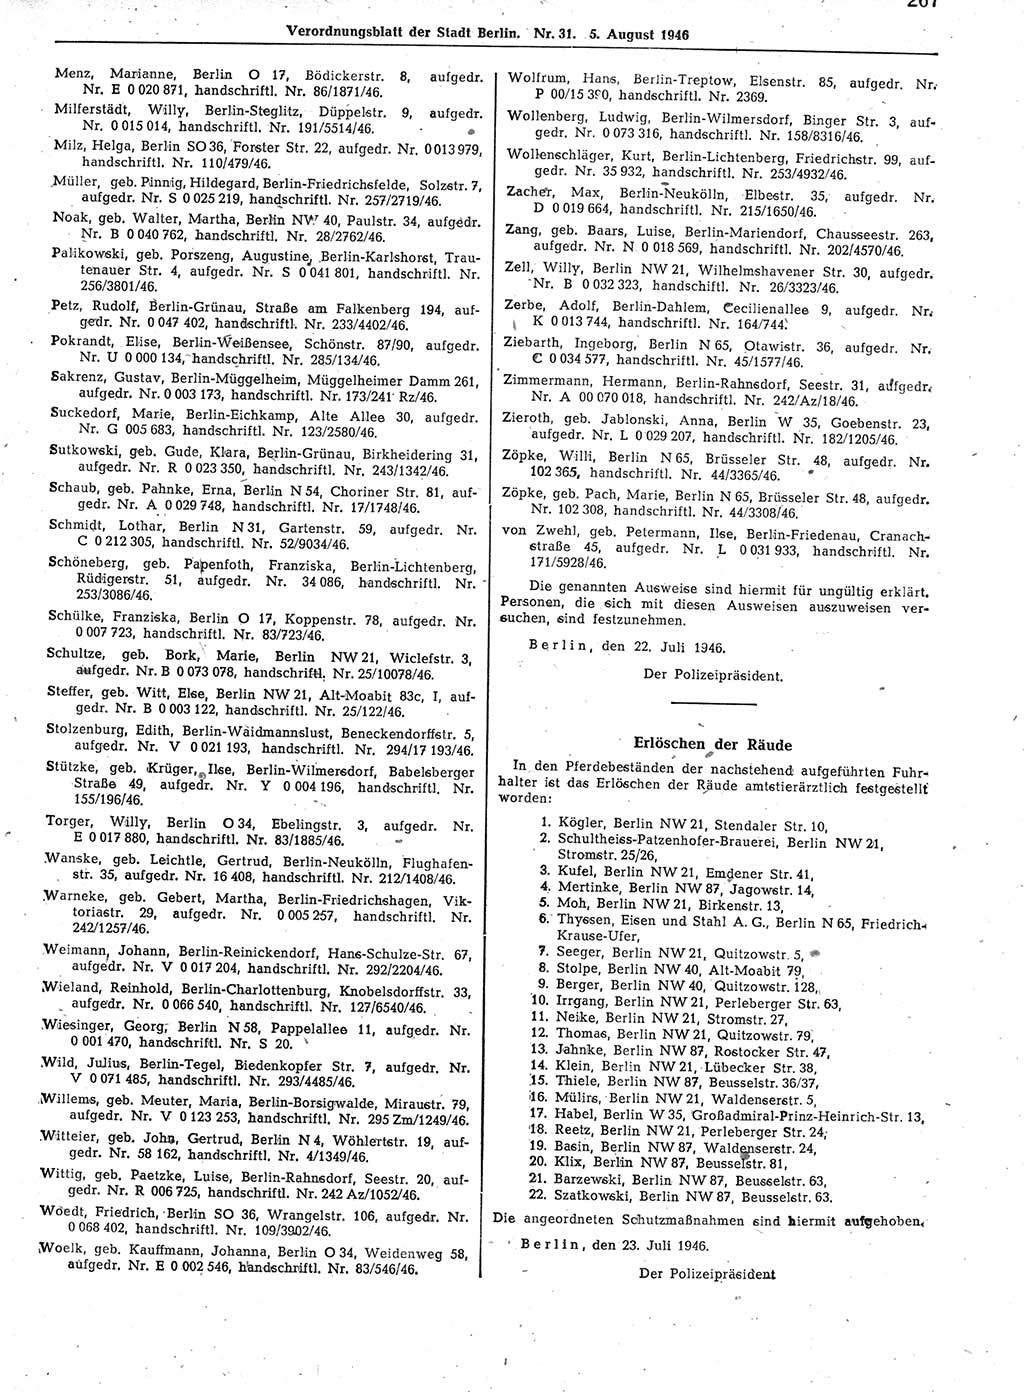 Verordnungsblatt (VOBl.) der Stadt Berlin, für Groß-Berlin 1946, Seite 267 (VOBl. Bln. 1946, S. 267)